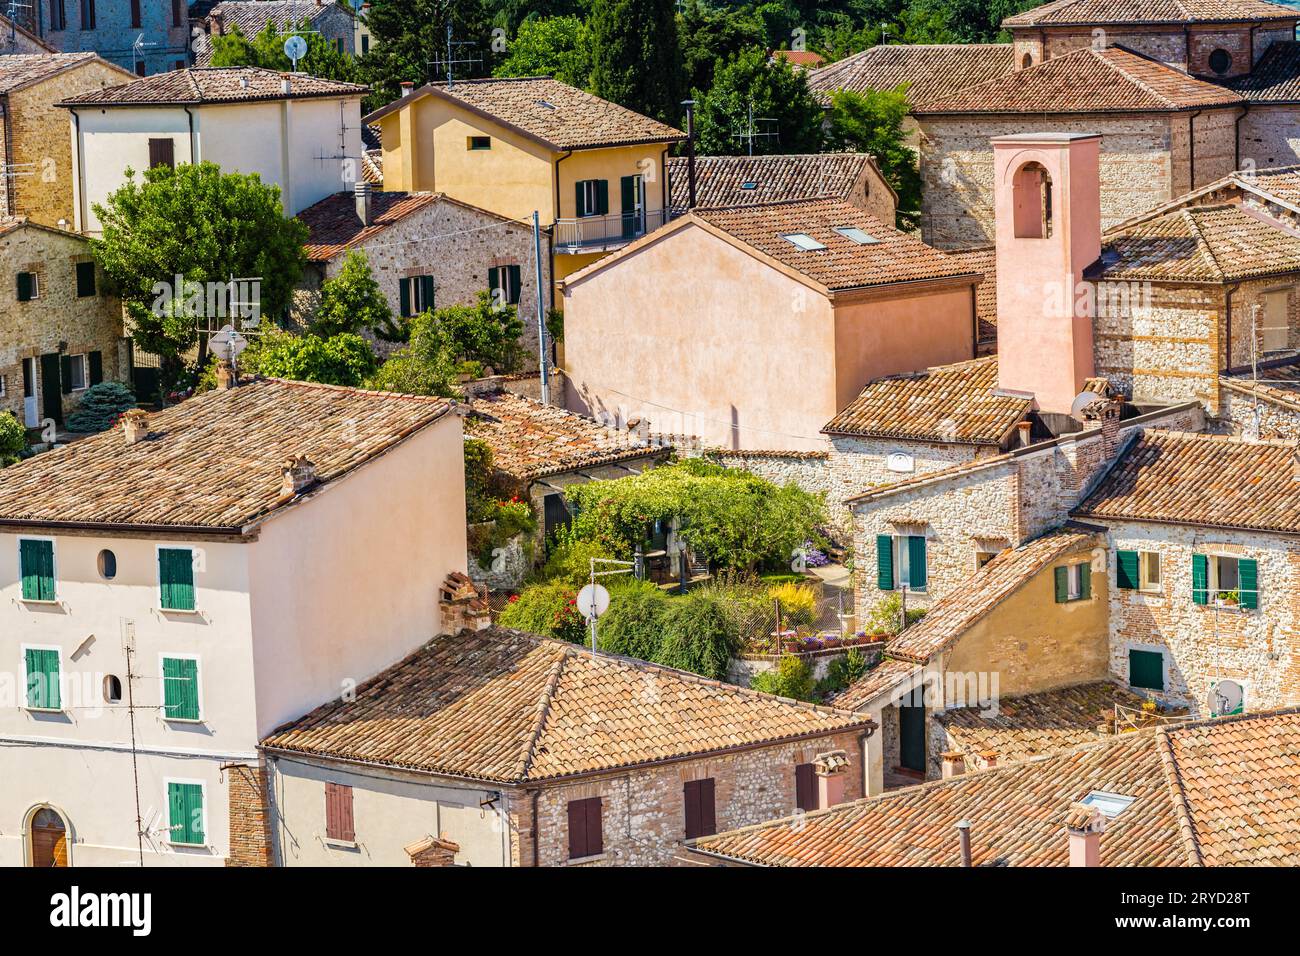 Village médiéval de Romagne en Italie Banque D'Images